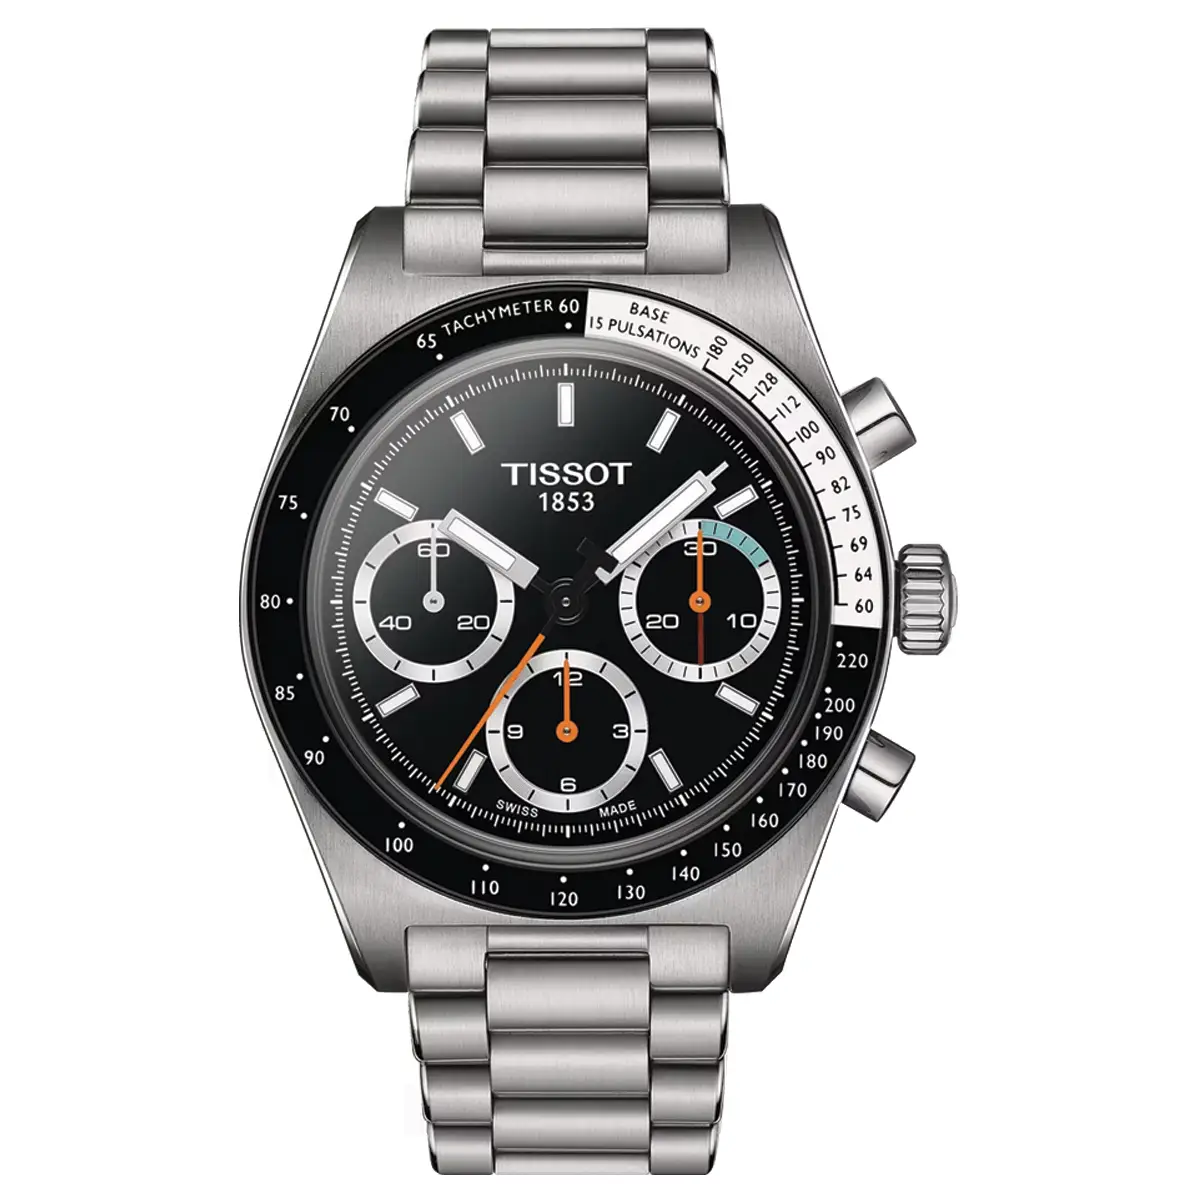 Đồng hồ Tissot PR516 Mechanical Chronograph T149.459.21.051.00 mặt số màu đen. Dây đeo bằng thép. Thân vỏ bằng thép.